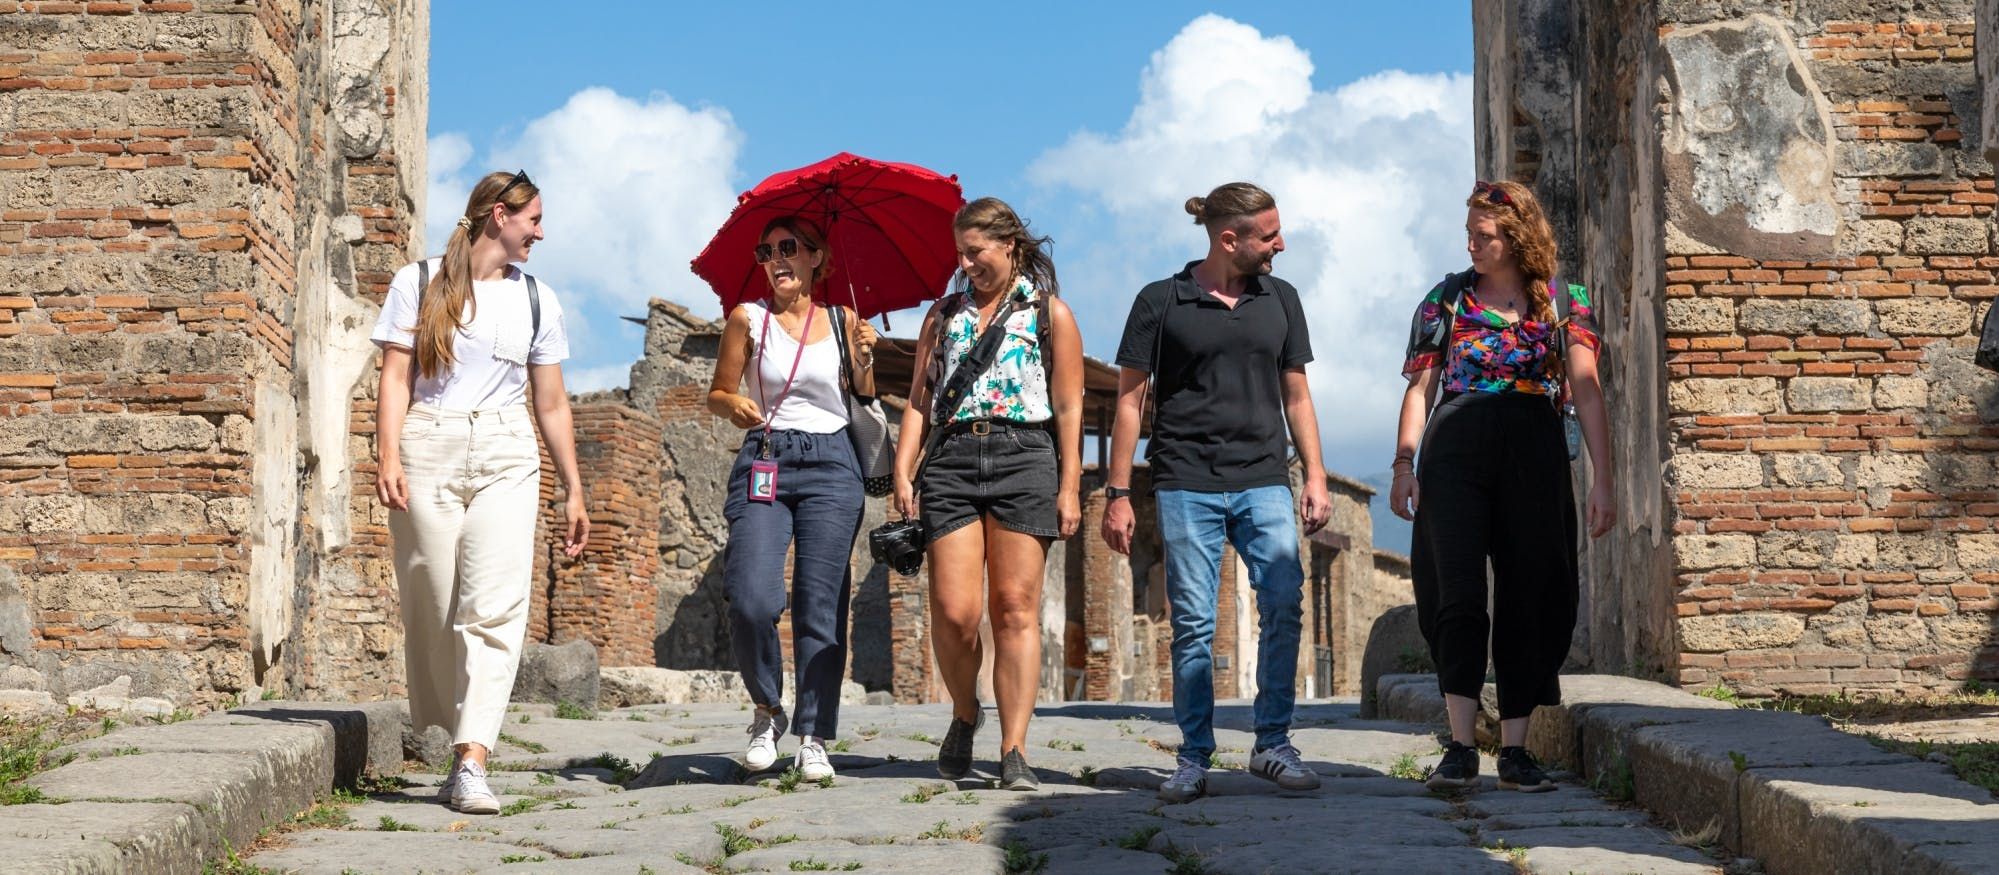 Imagen del tour: Visita en un grupo reducido a la zona arqueológica de Pompeya con un guía local